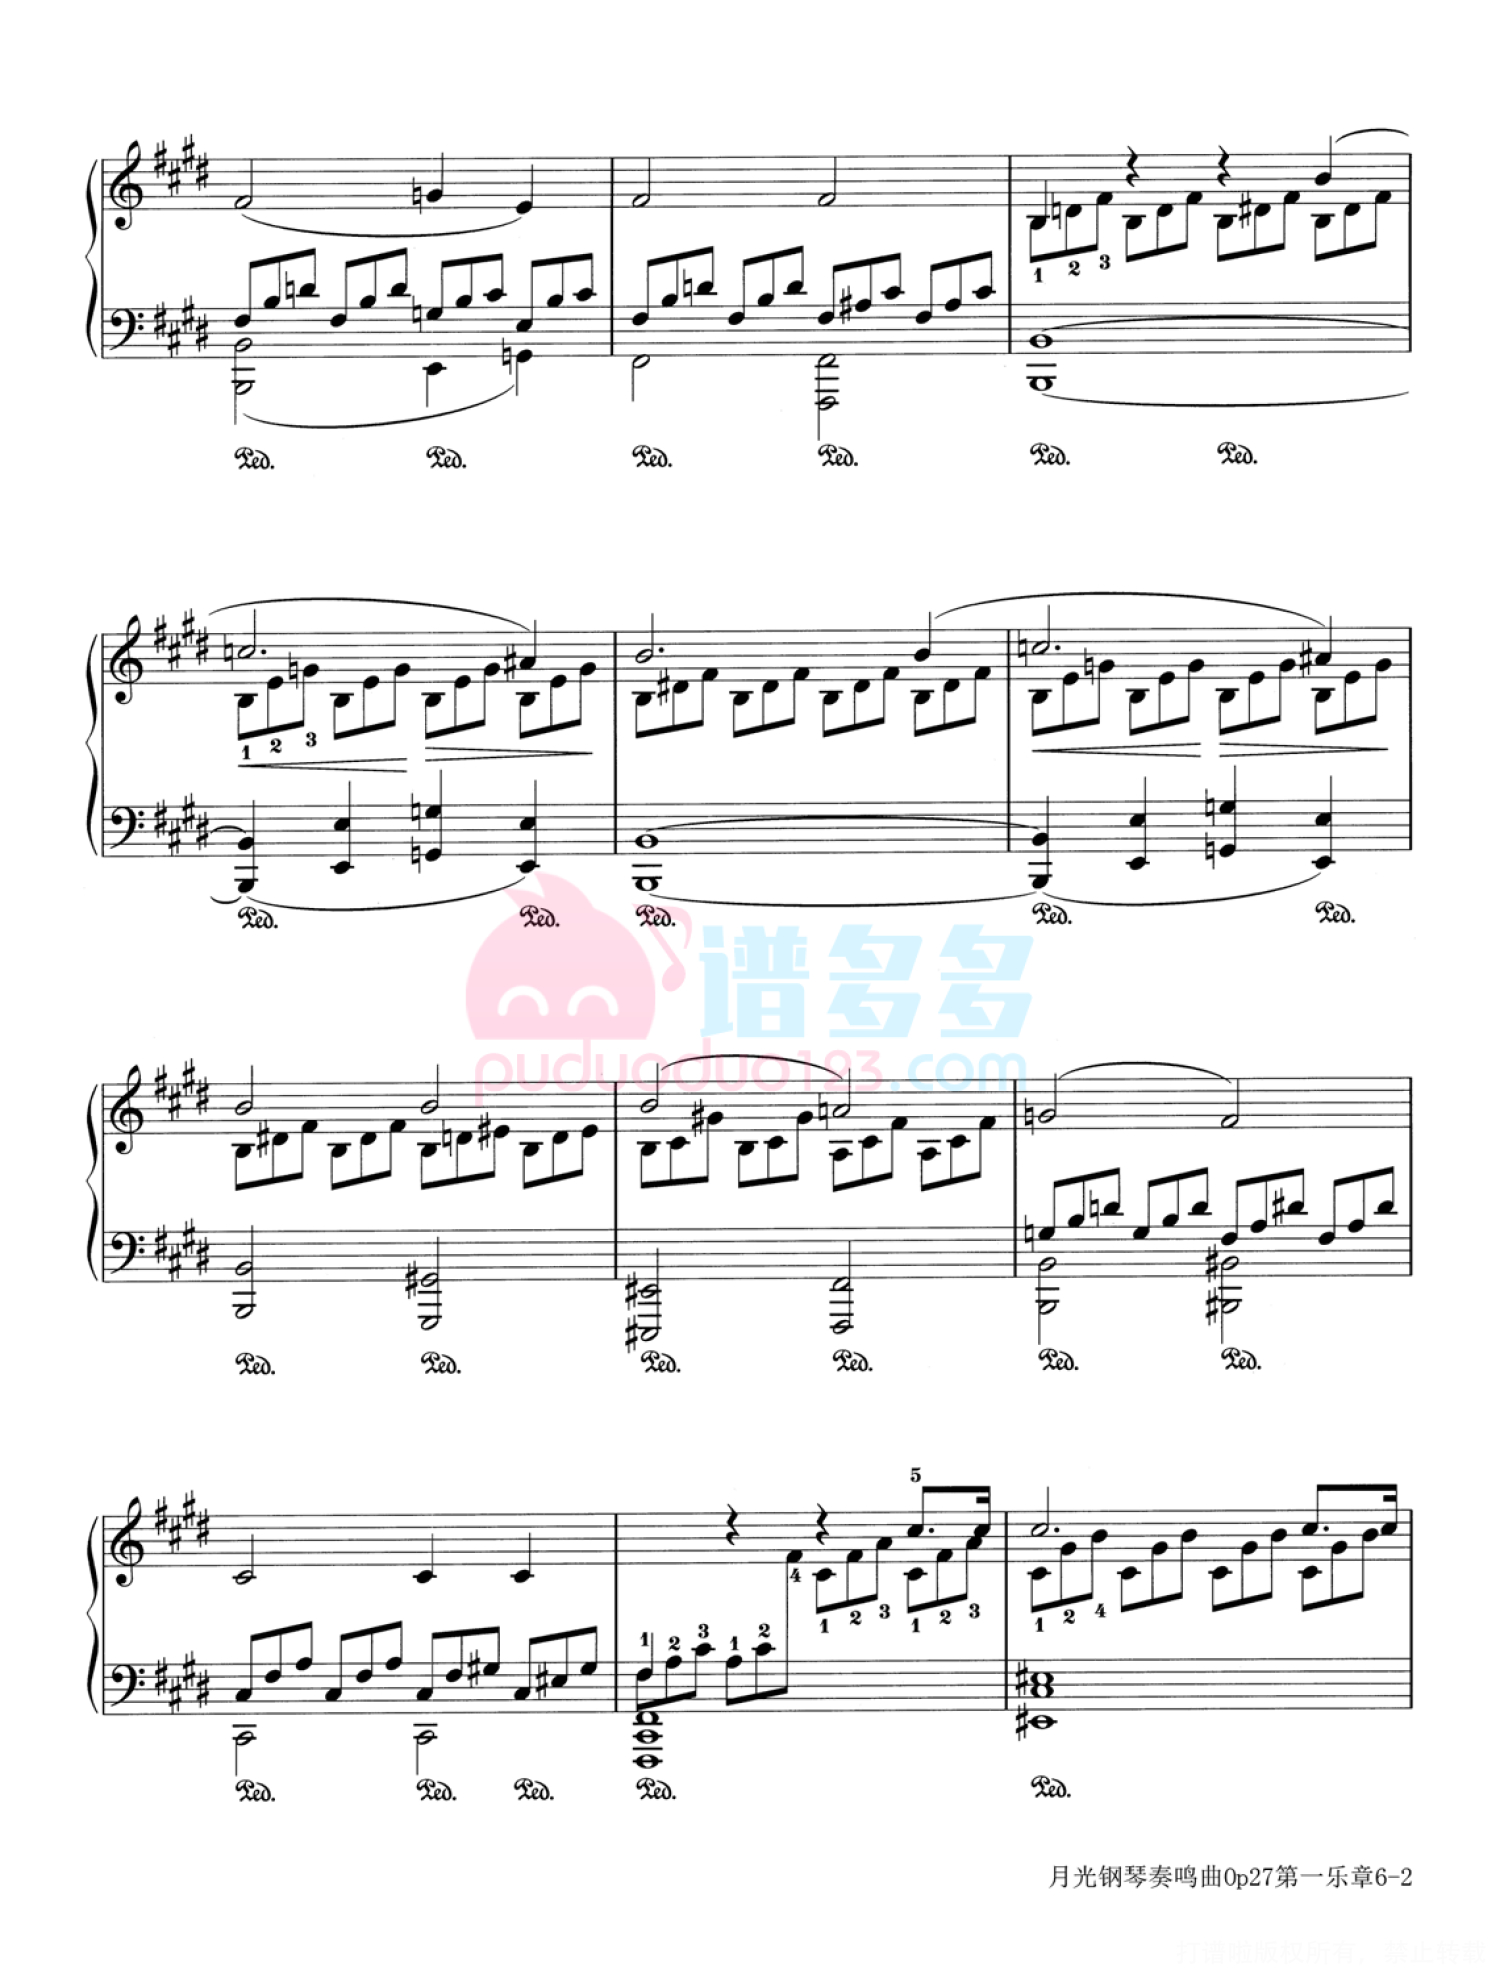 贝多芬《月光》奏鸣曲钢琴谱OP.27 No.2第2张